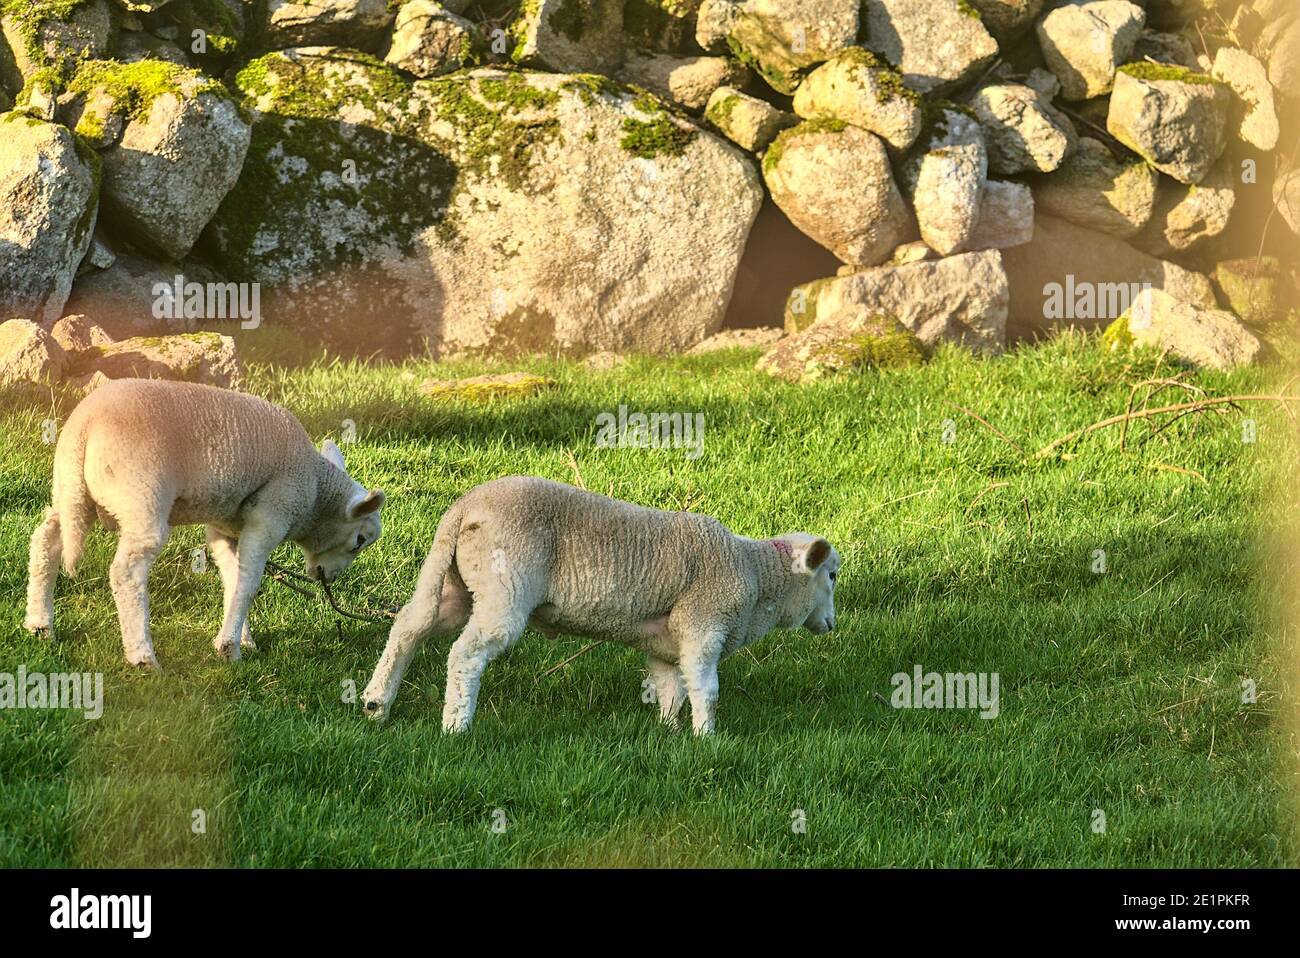 Belle et très mignonne agneaux pageant sur la pelouse dans la soirée ensoleillée le long de la route Cruagh (R116), Co. Dublin, Irlande Banque D'Images